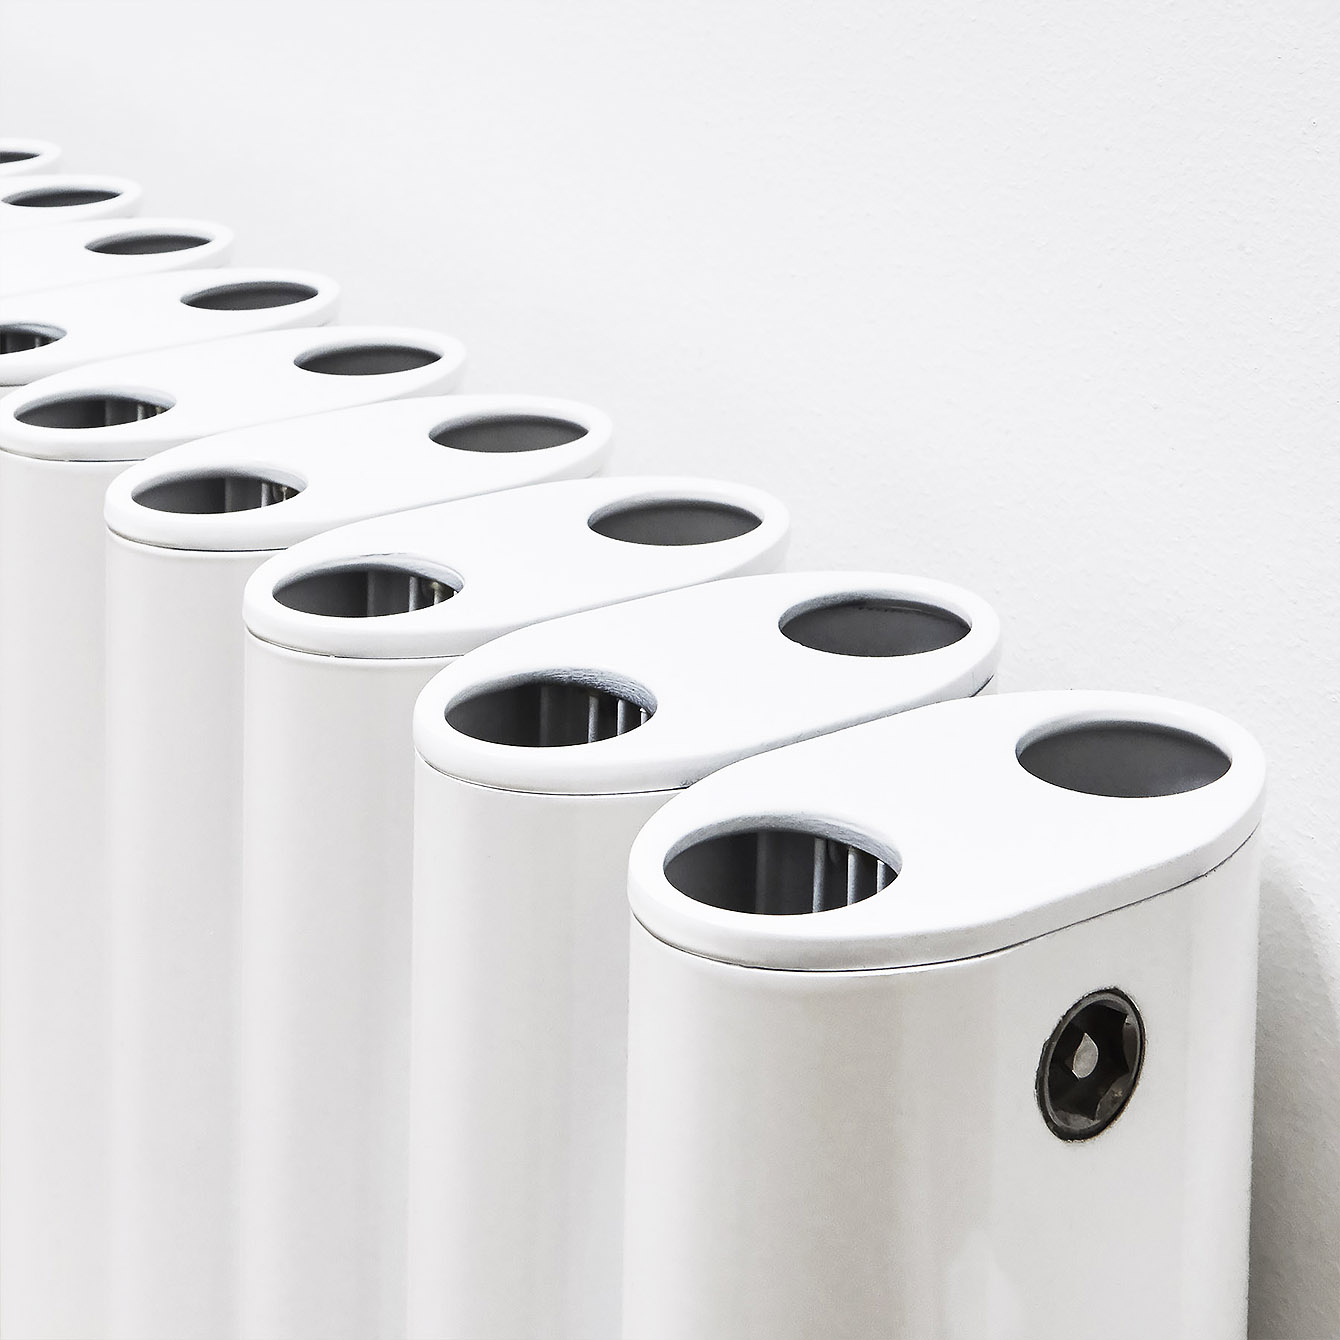 Ron White - Stilvoller ESKIMO Aluminium-Heizkörper (RAL9016, weiß) für Wohn- & Badraum | Radiamo